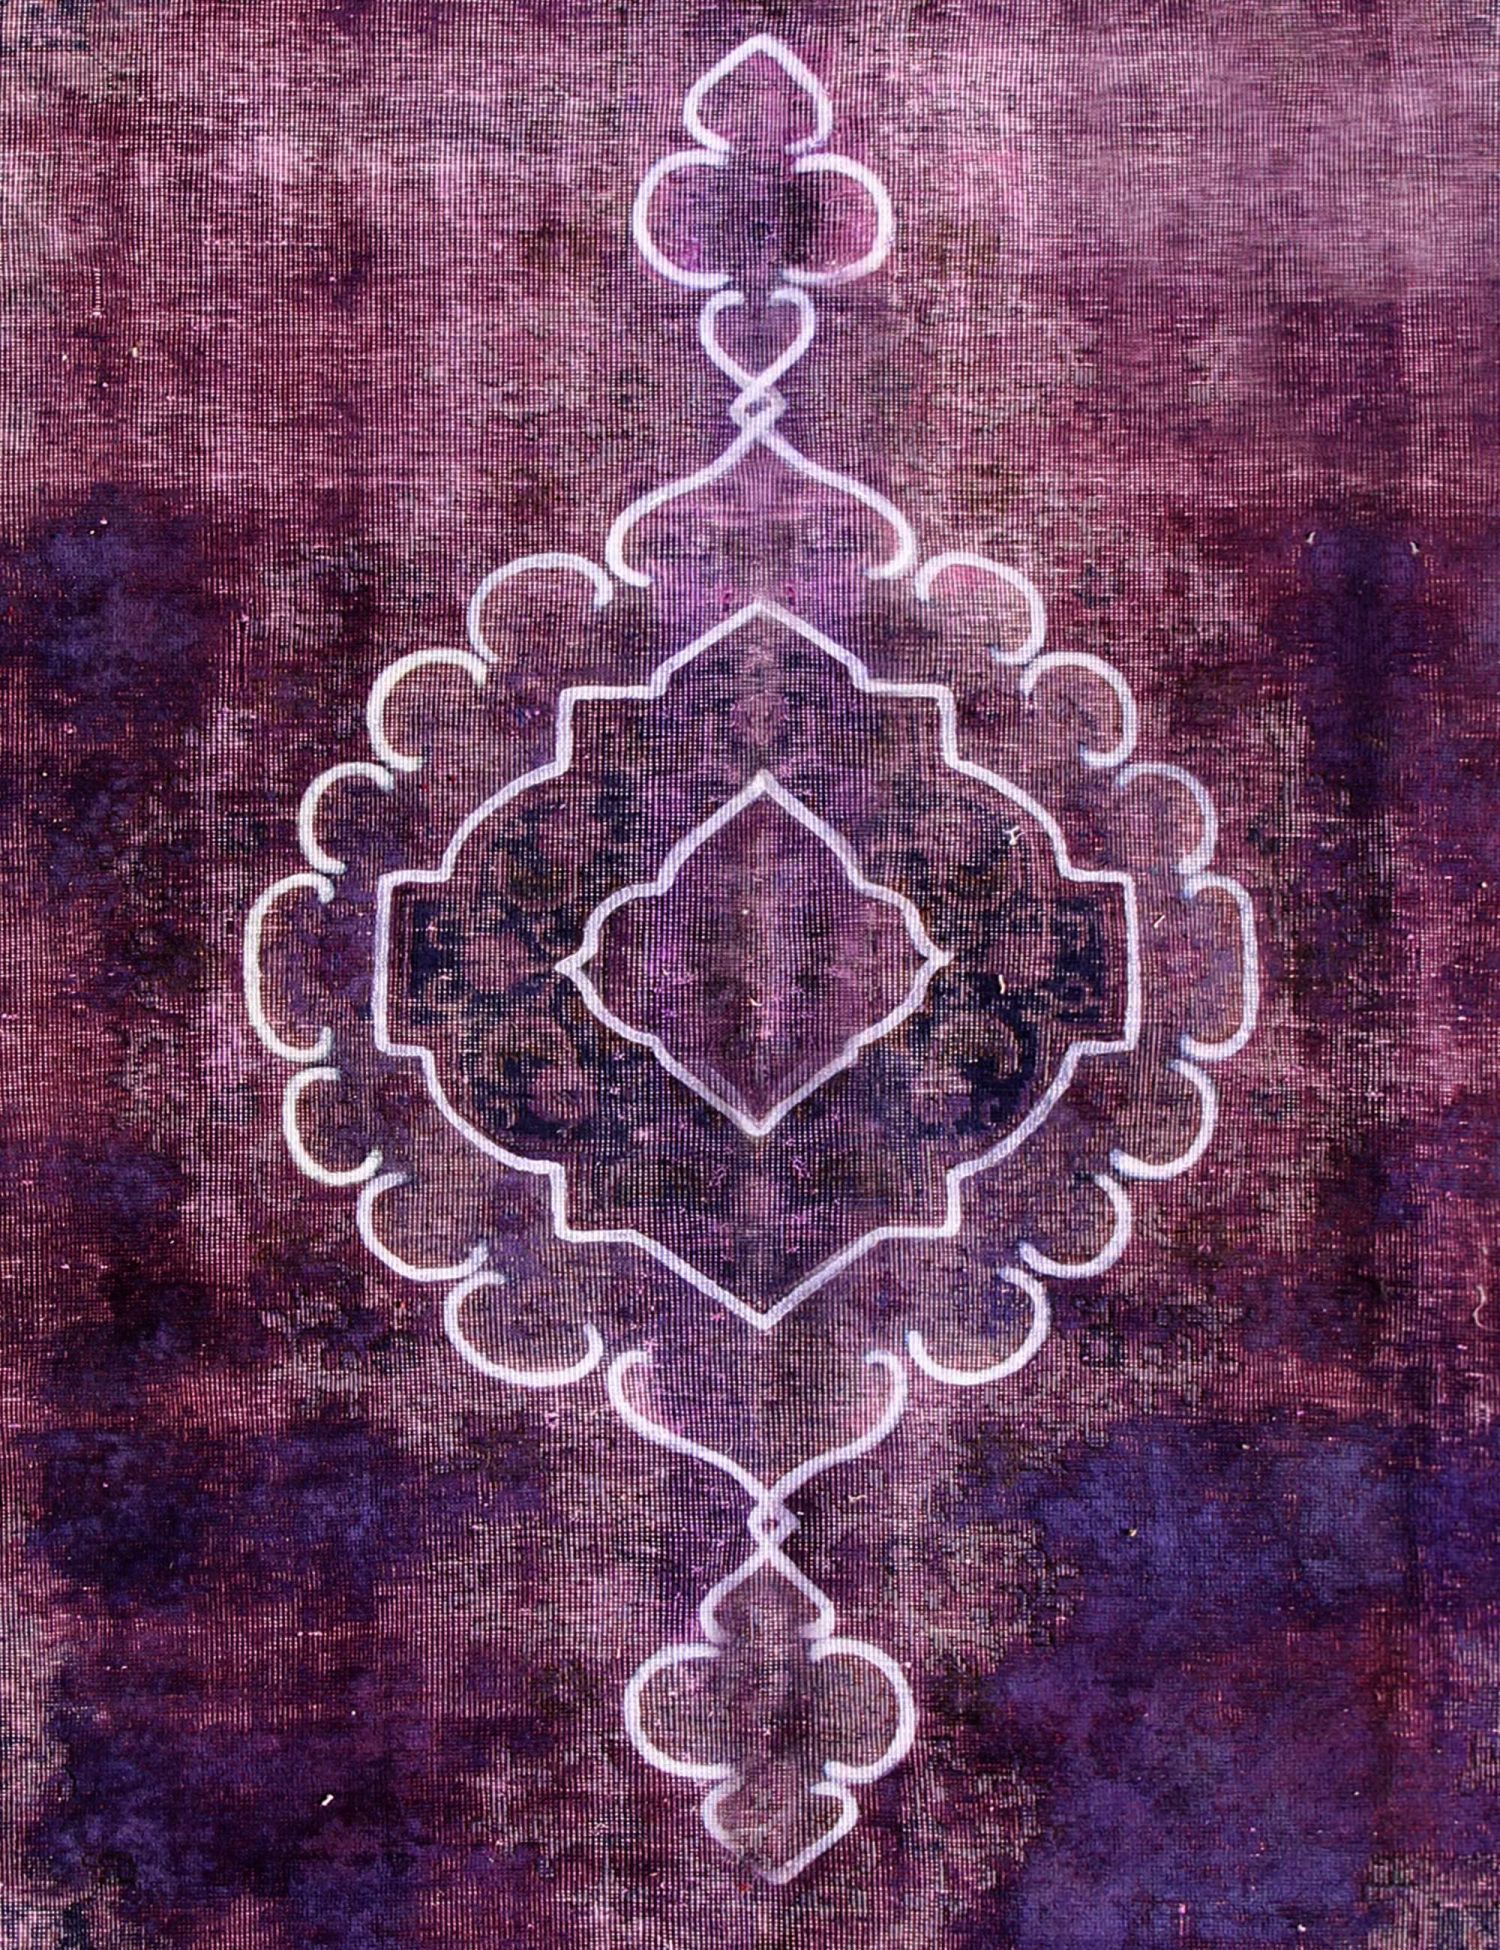 Persian Vintage Carpet  purple  <br/>276 x 178 cm